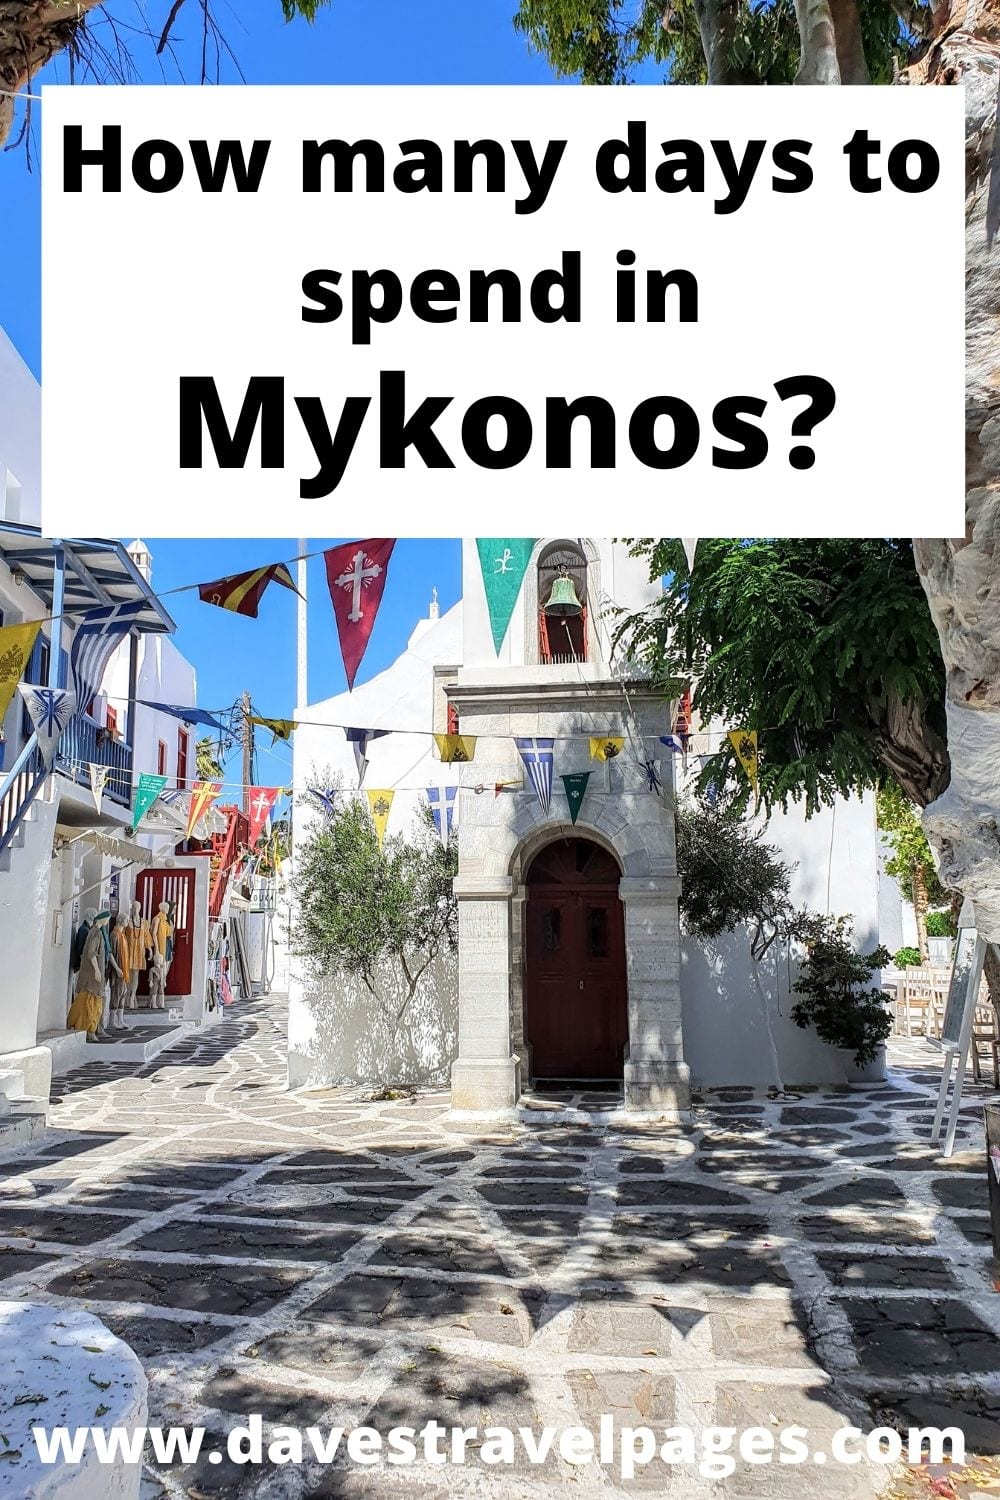 Quantos dias deve passar em Mykonos?